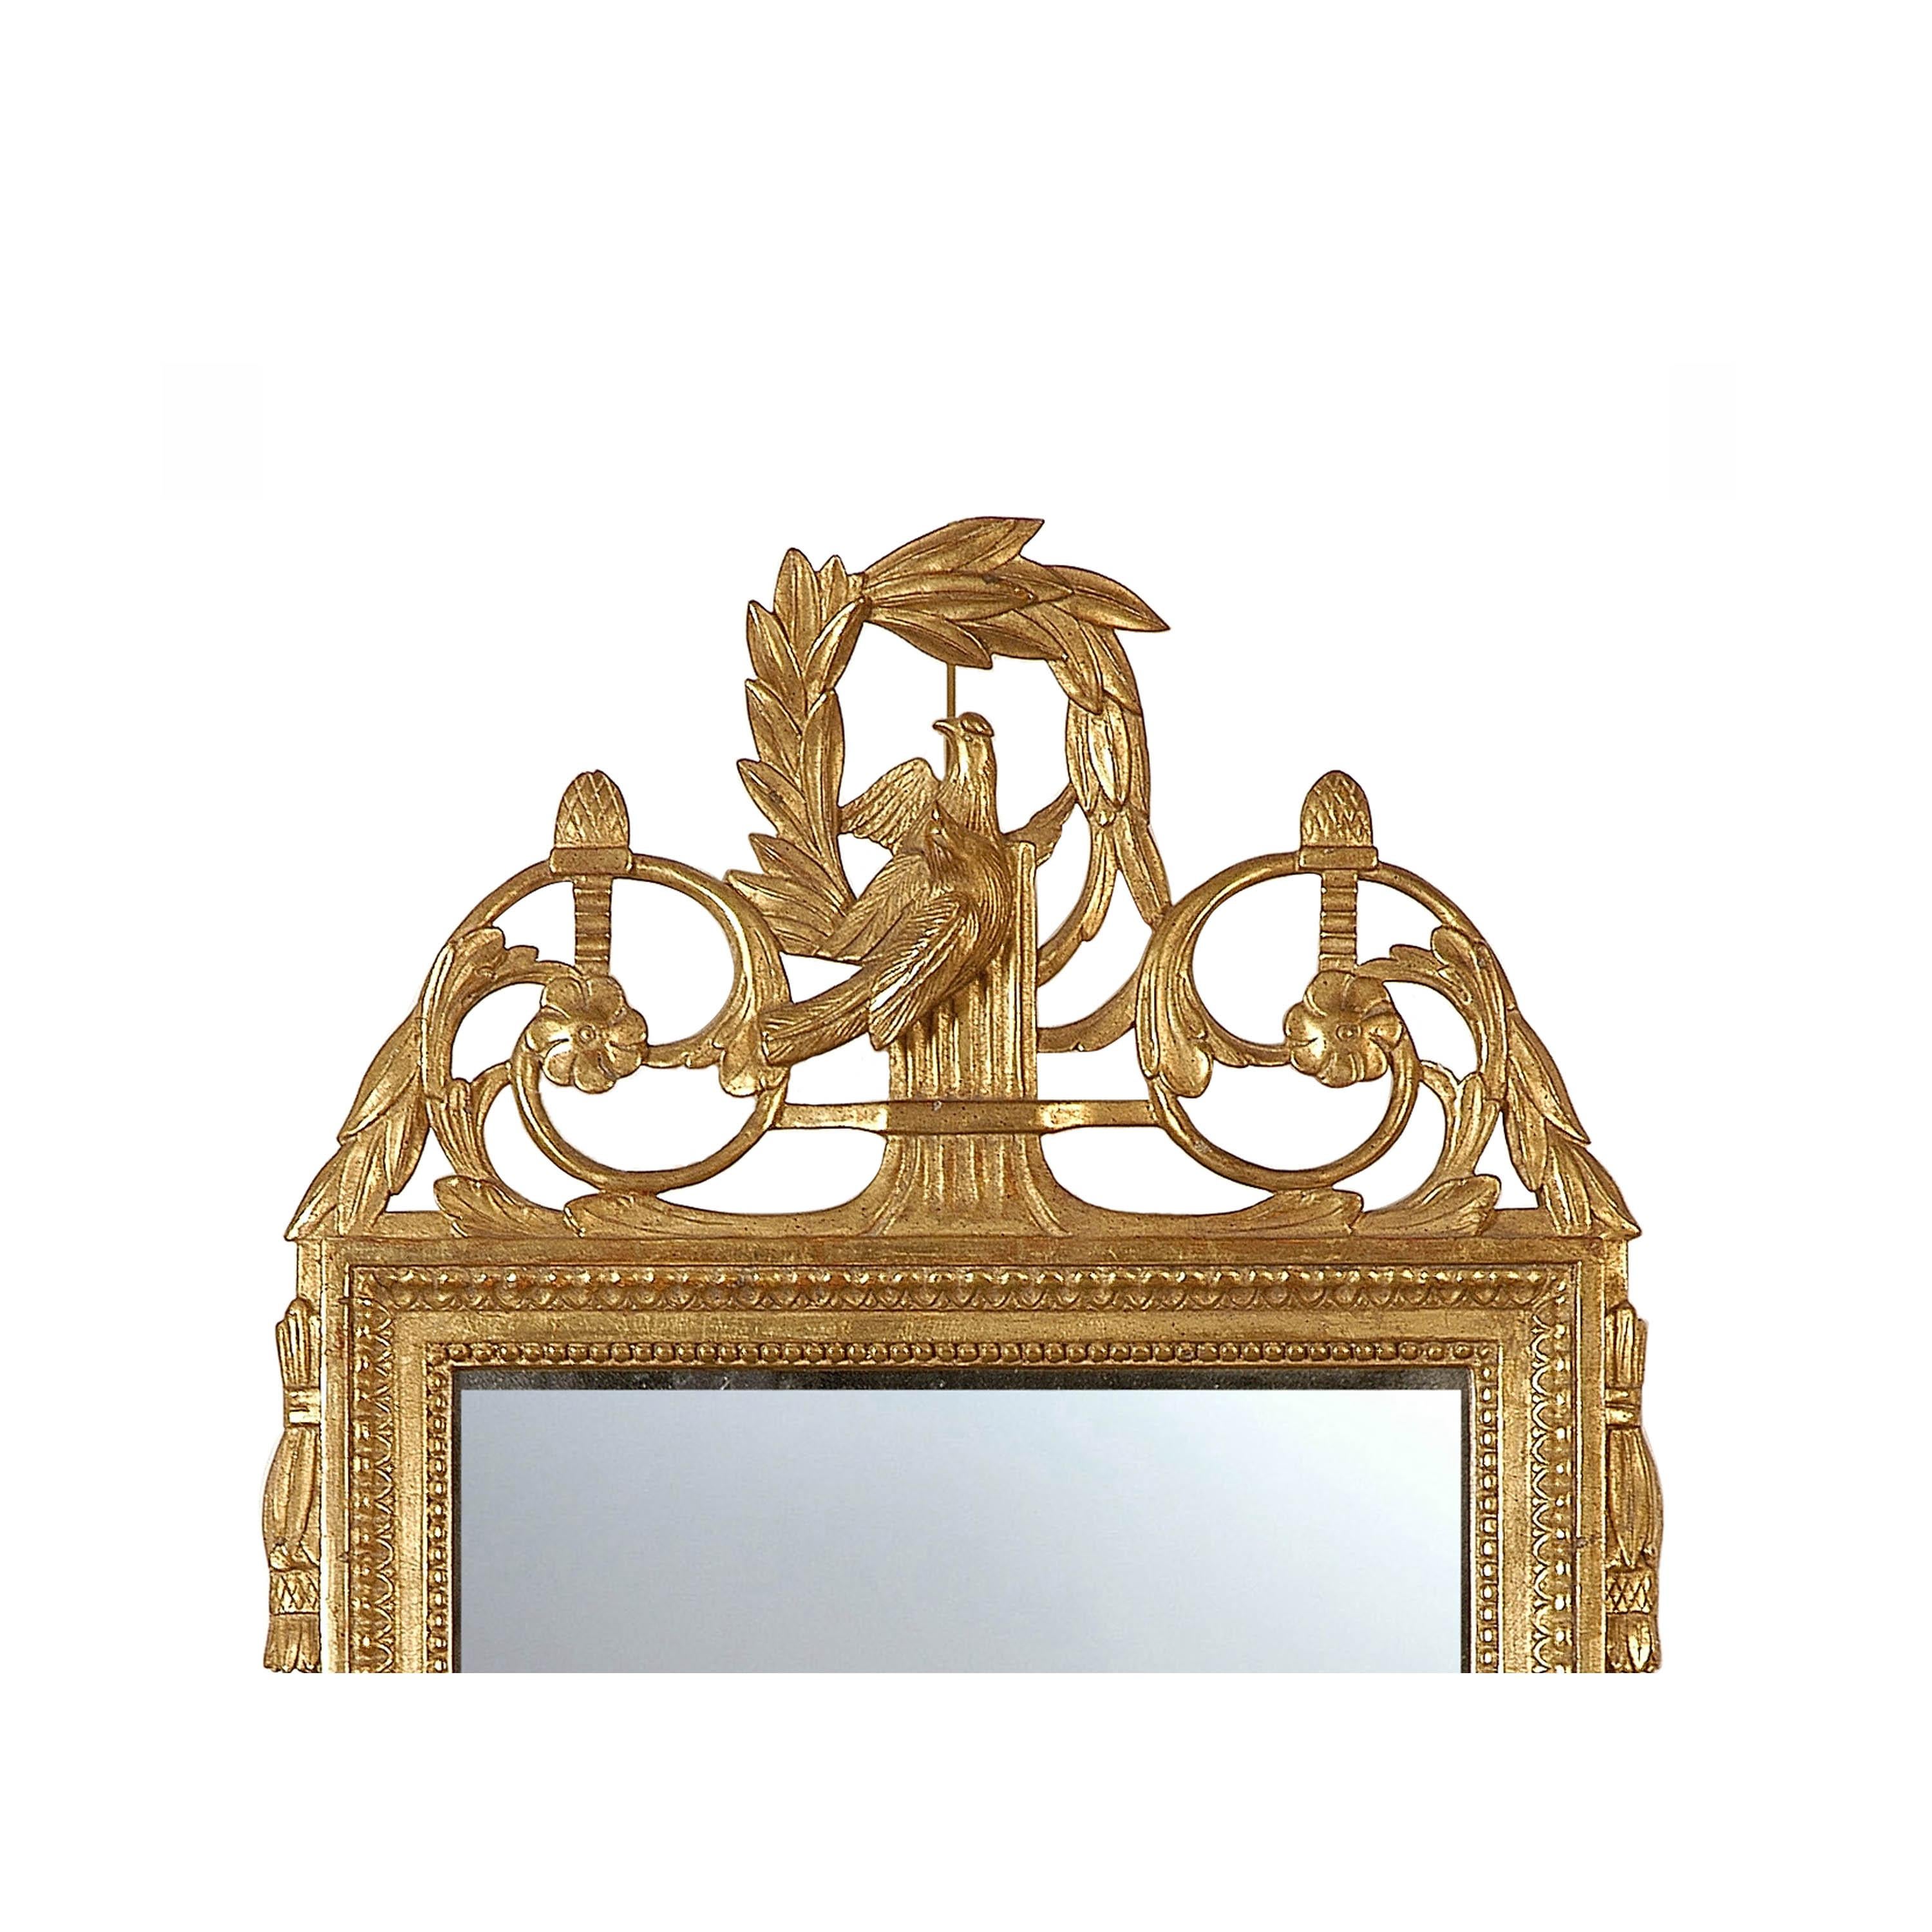 Handgefertigter Spiegel im neoklassizistischen Regency-Stil. Rechteckige, handgeschnitzte Holzstruktur mit Goldfolie überzogen, Spanien, 1970.
 